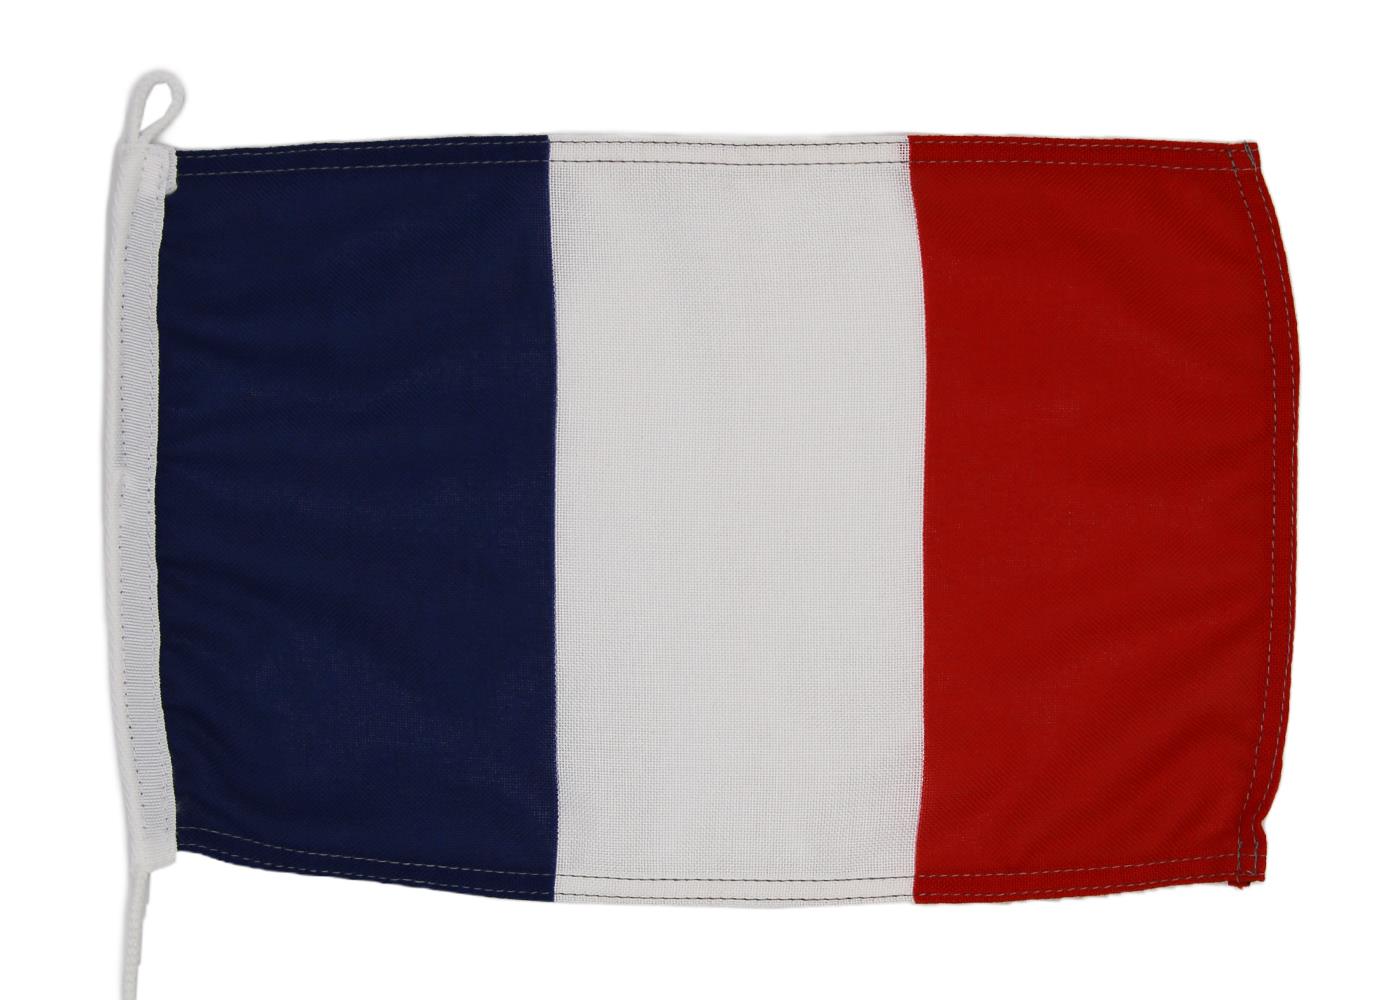 Gastlandflagge Frankreich 40X60cm